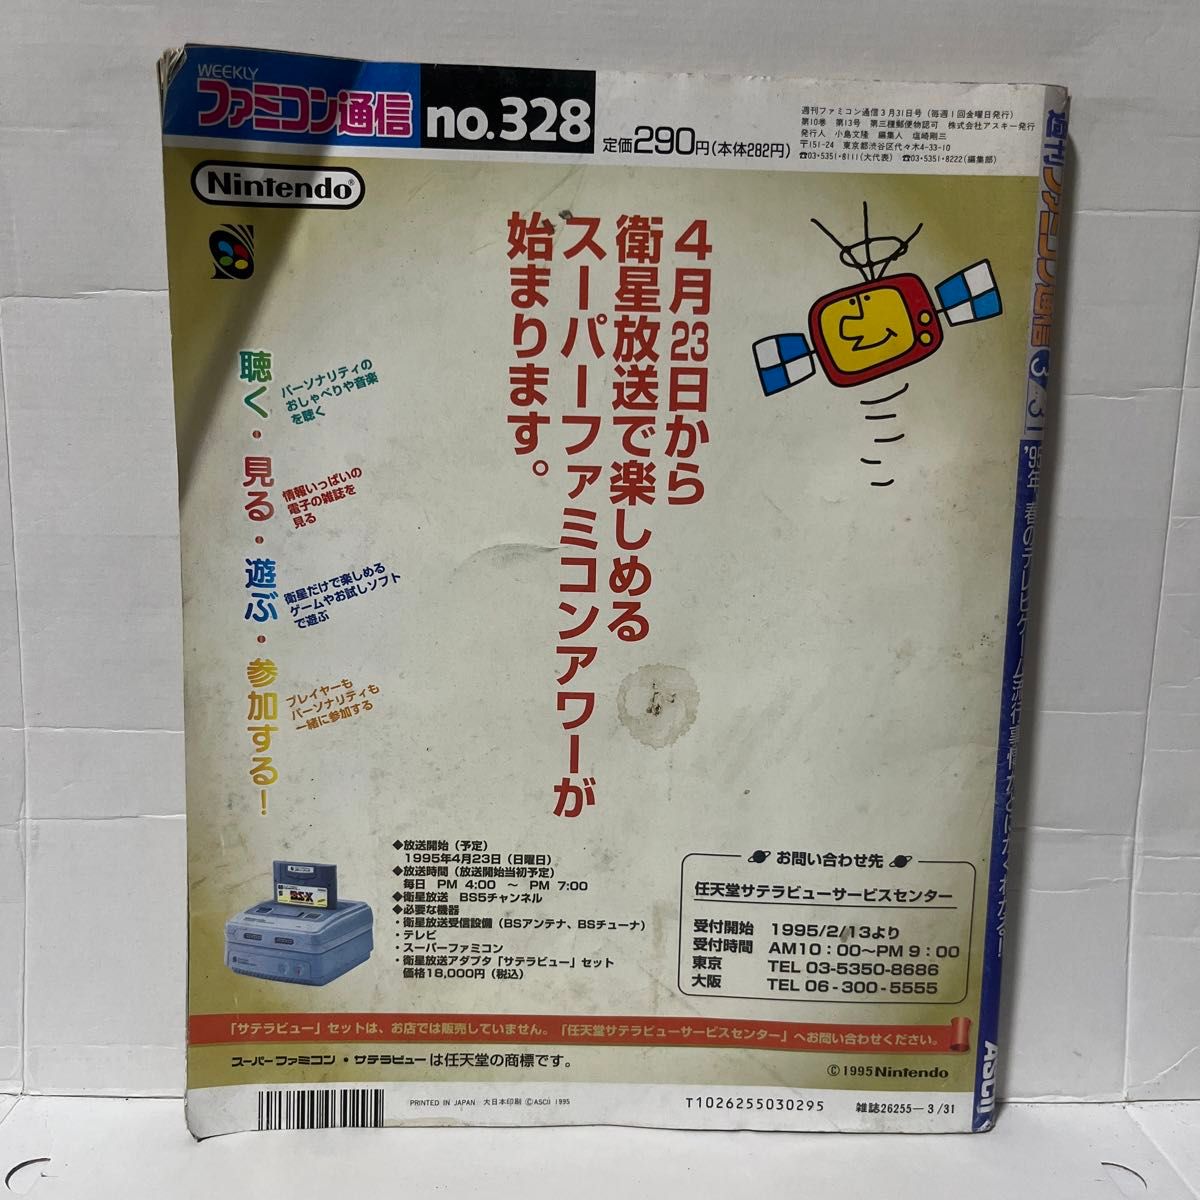 【レア】85.WEEKLY ファミコン通信 1995 3.31 no.328